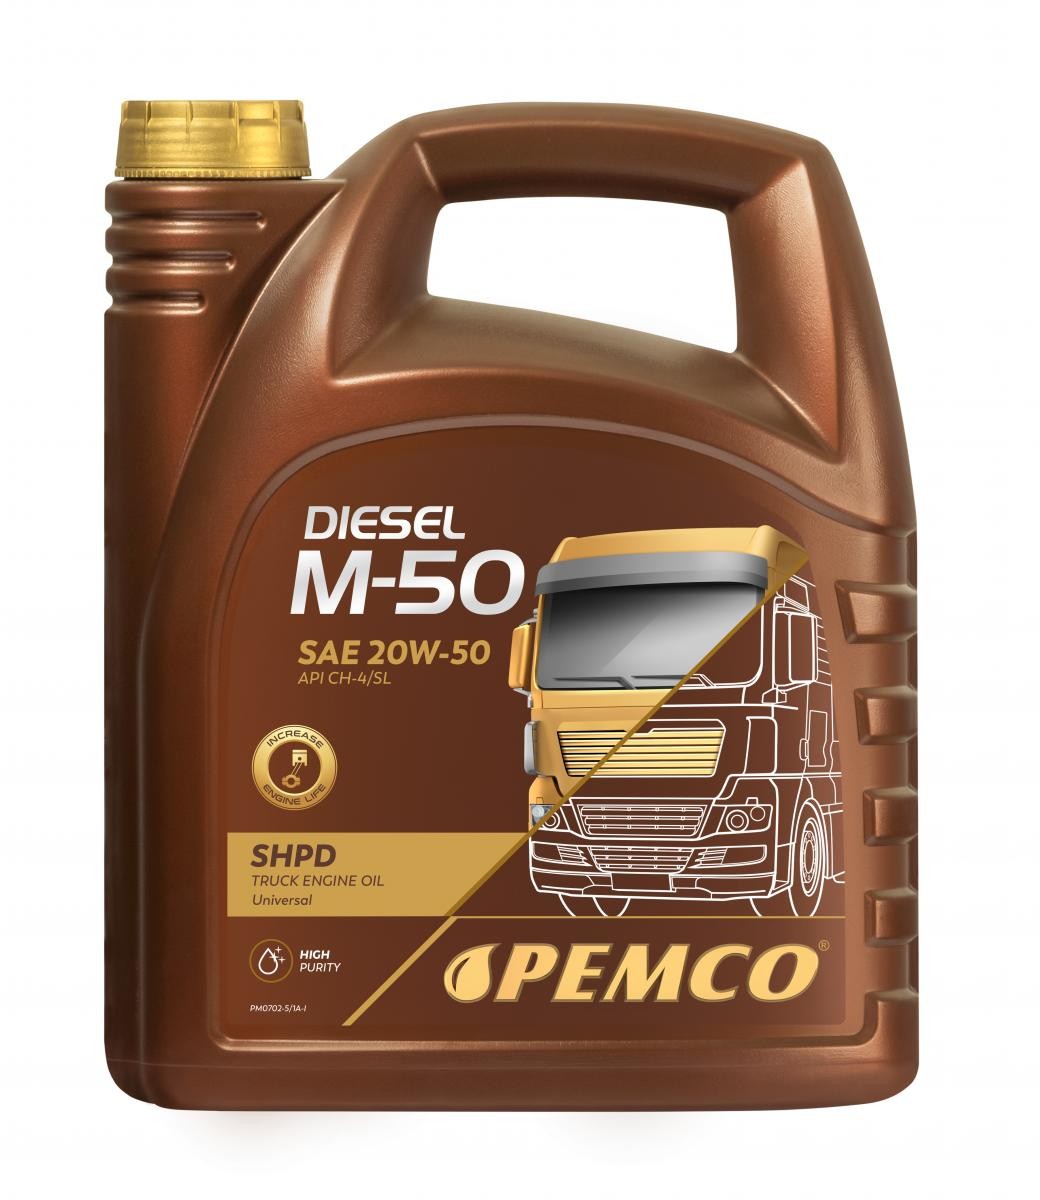 Buy Auto oil PEMCO diesel PM0702-5 Truck SHPD, DIESEL M-50 SHPD 20W-50, 5l, Mineral Oil